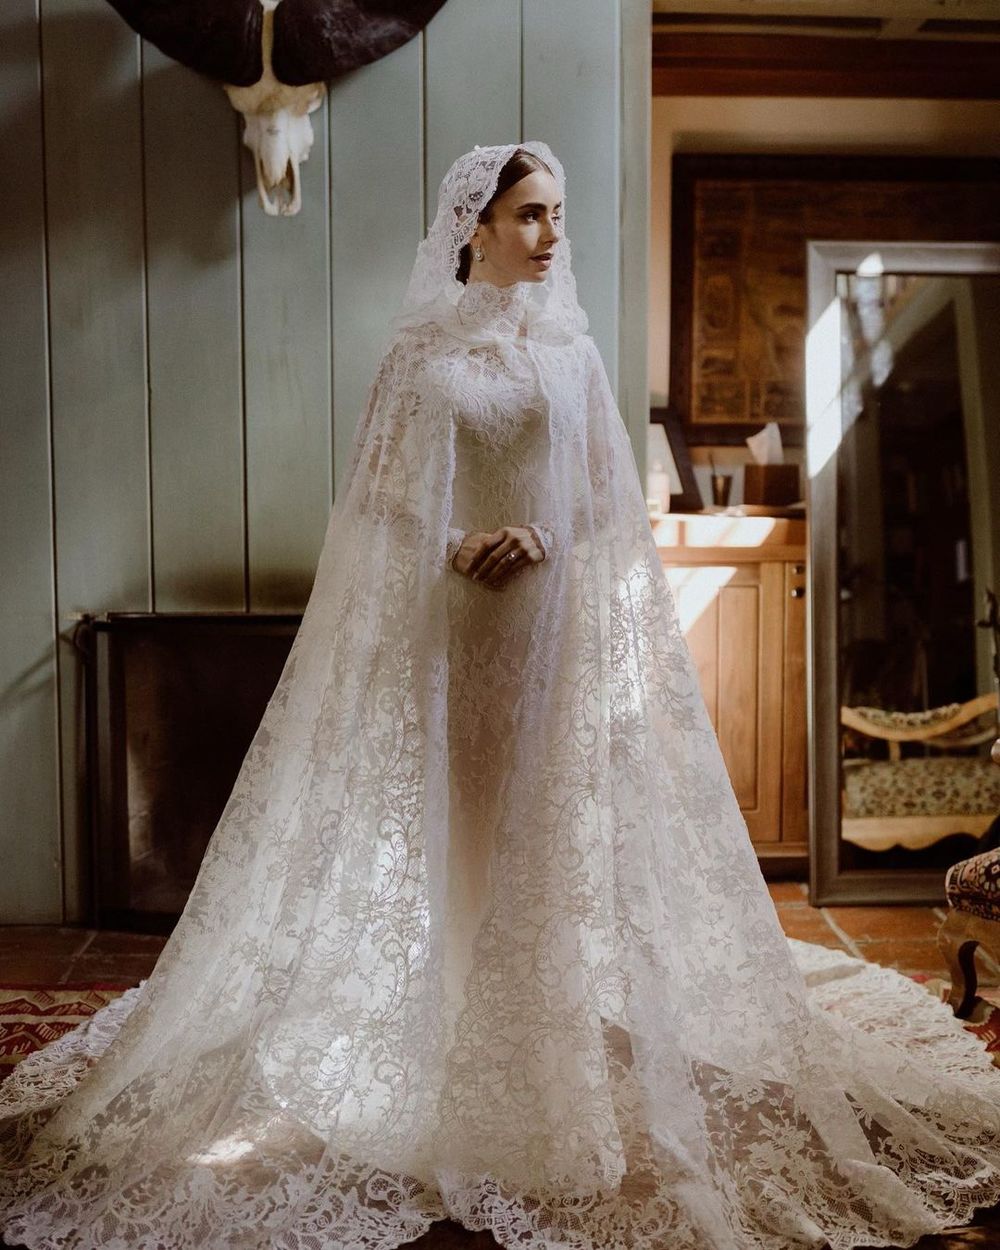 Trong ngày trọng đại của cuộc đời, Lily Collins xuất thần trong thiết kế váy cưới ren trắng kín như bưng. Đây là một chiếc váy rất kén người mặc, nhưng nữ diễn viên vẫn tỏa sáng hết mức.